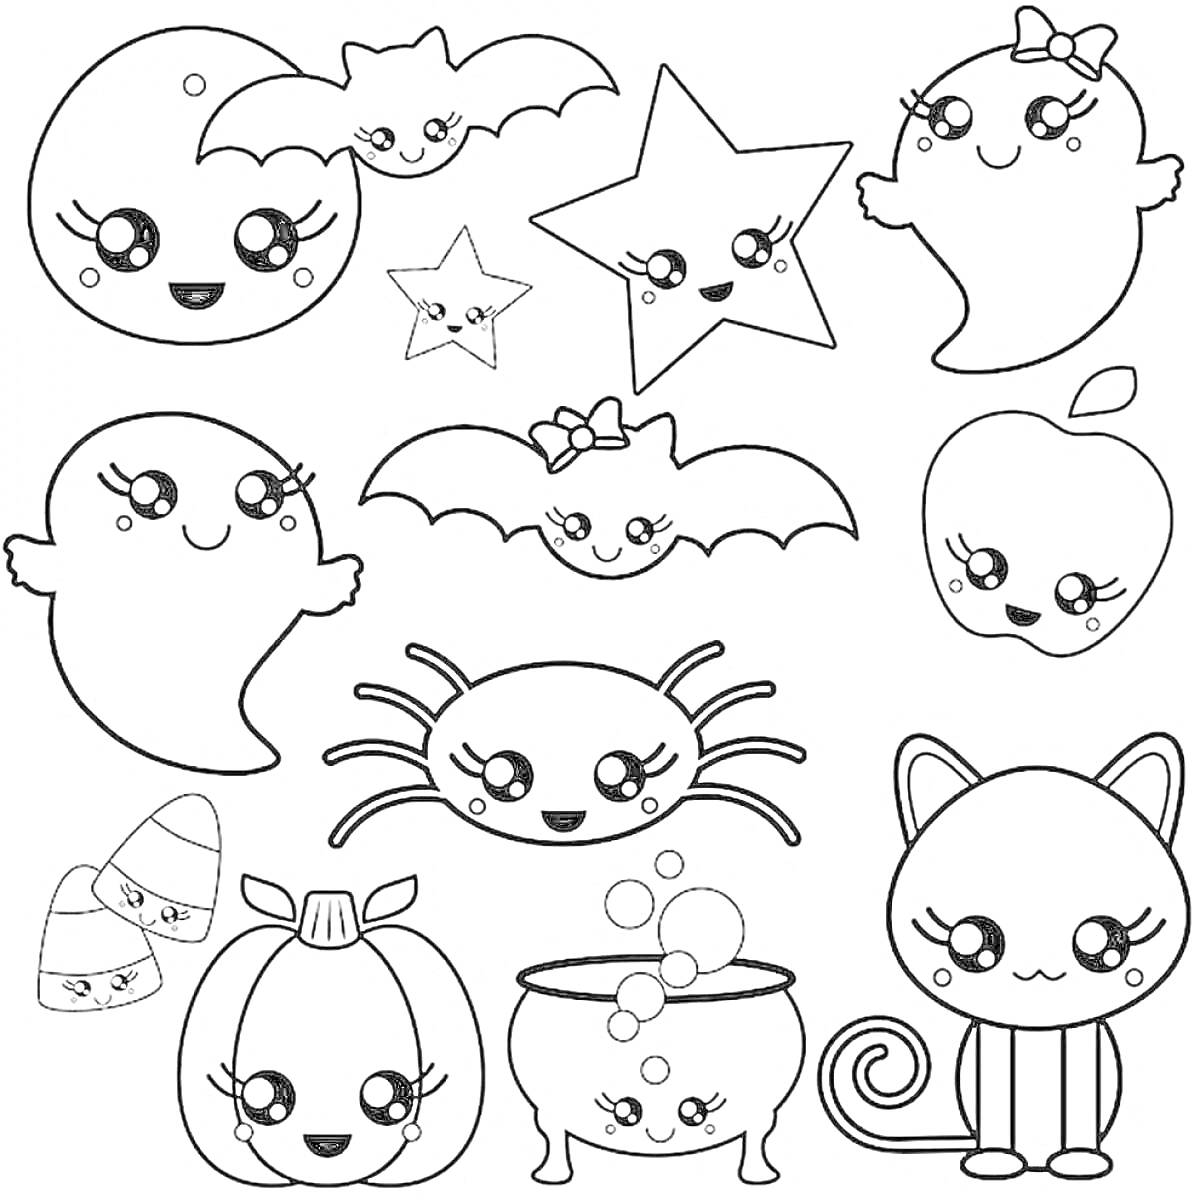 Раскраска милые Хэллоуинские стикеры с котиком, тыковкой, паучком, привидениями, конфетками, звездочками, яблоком, летающими мышами и котлом